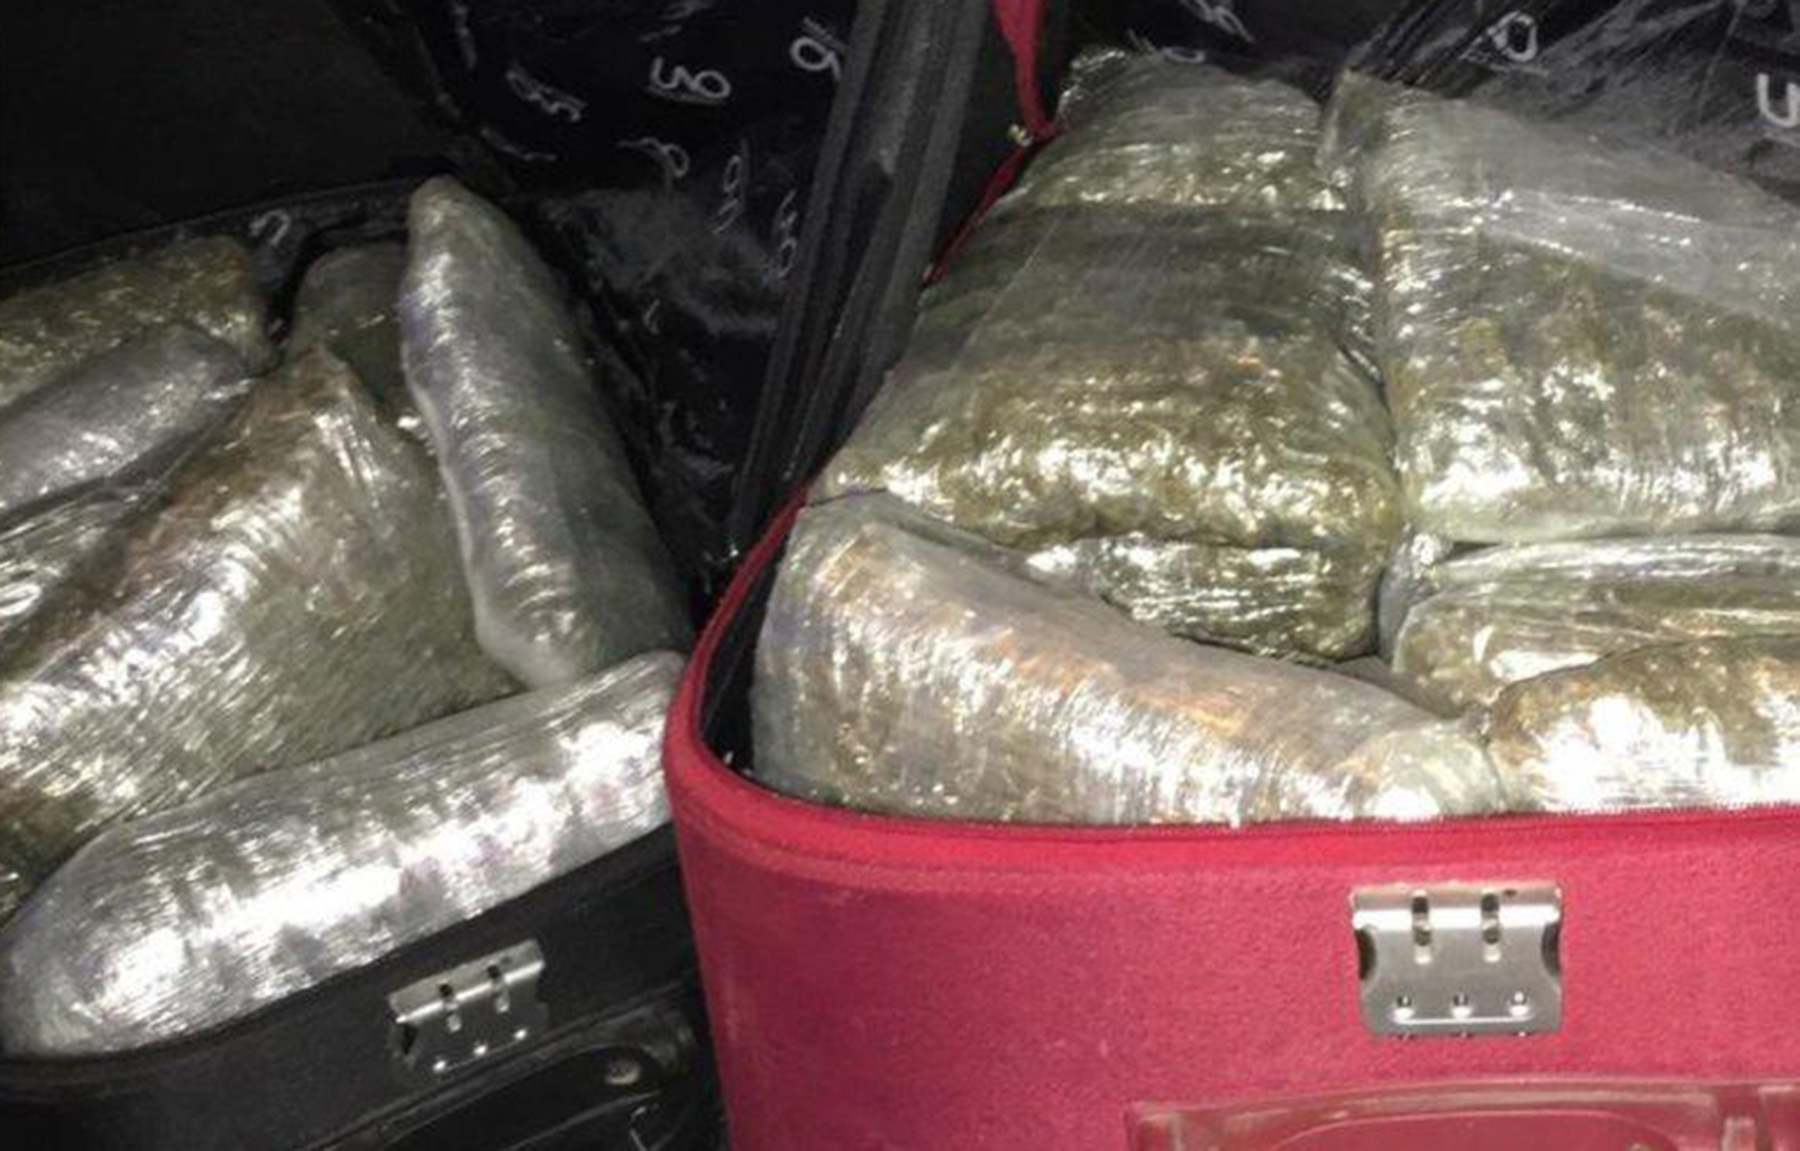 Policija u tri odvojene akcije, zaplenila više od 17 kilograma marihuane, 124 grama kokaina i uhapsila pet osoba